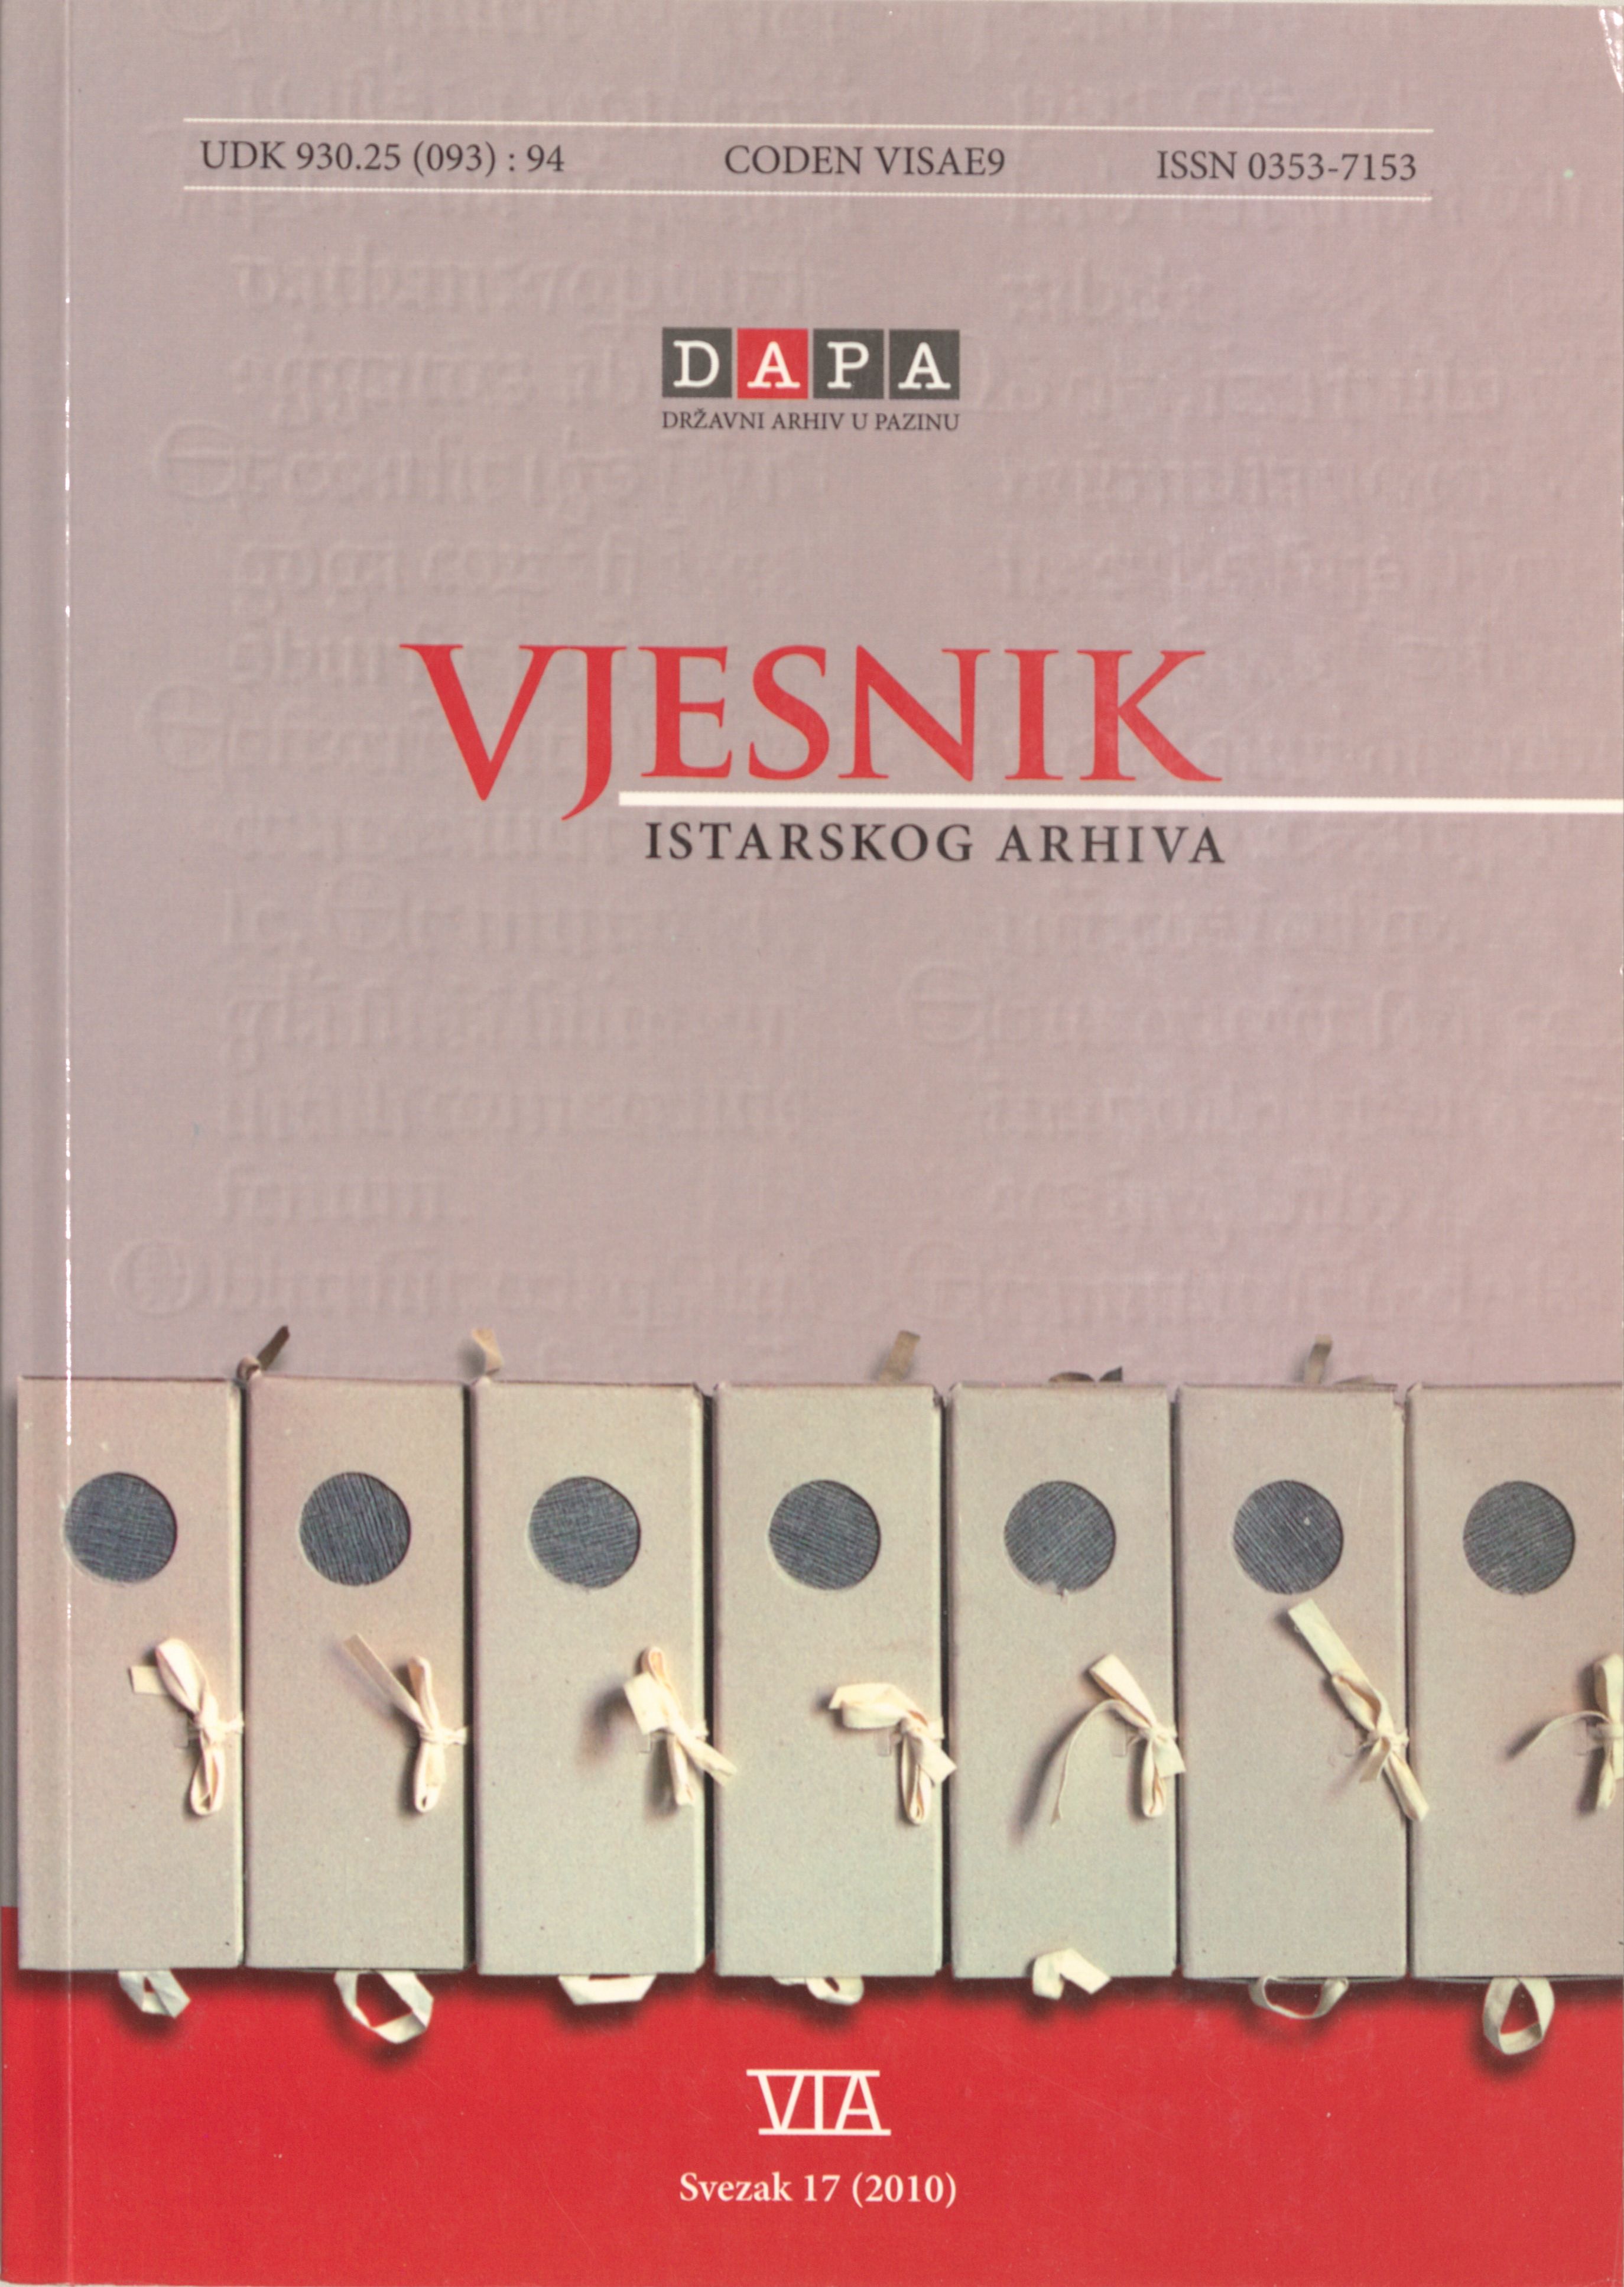 					Visualizza Vjesnik istarskog arhiva sv. 17 (2010.)
				